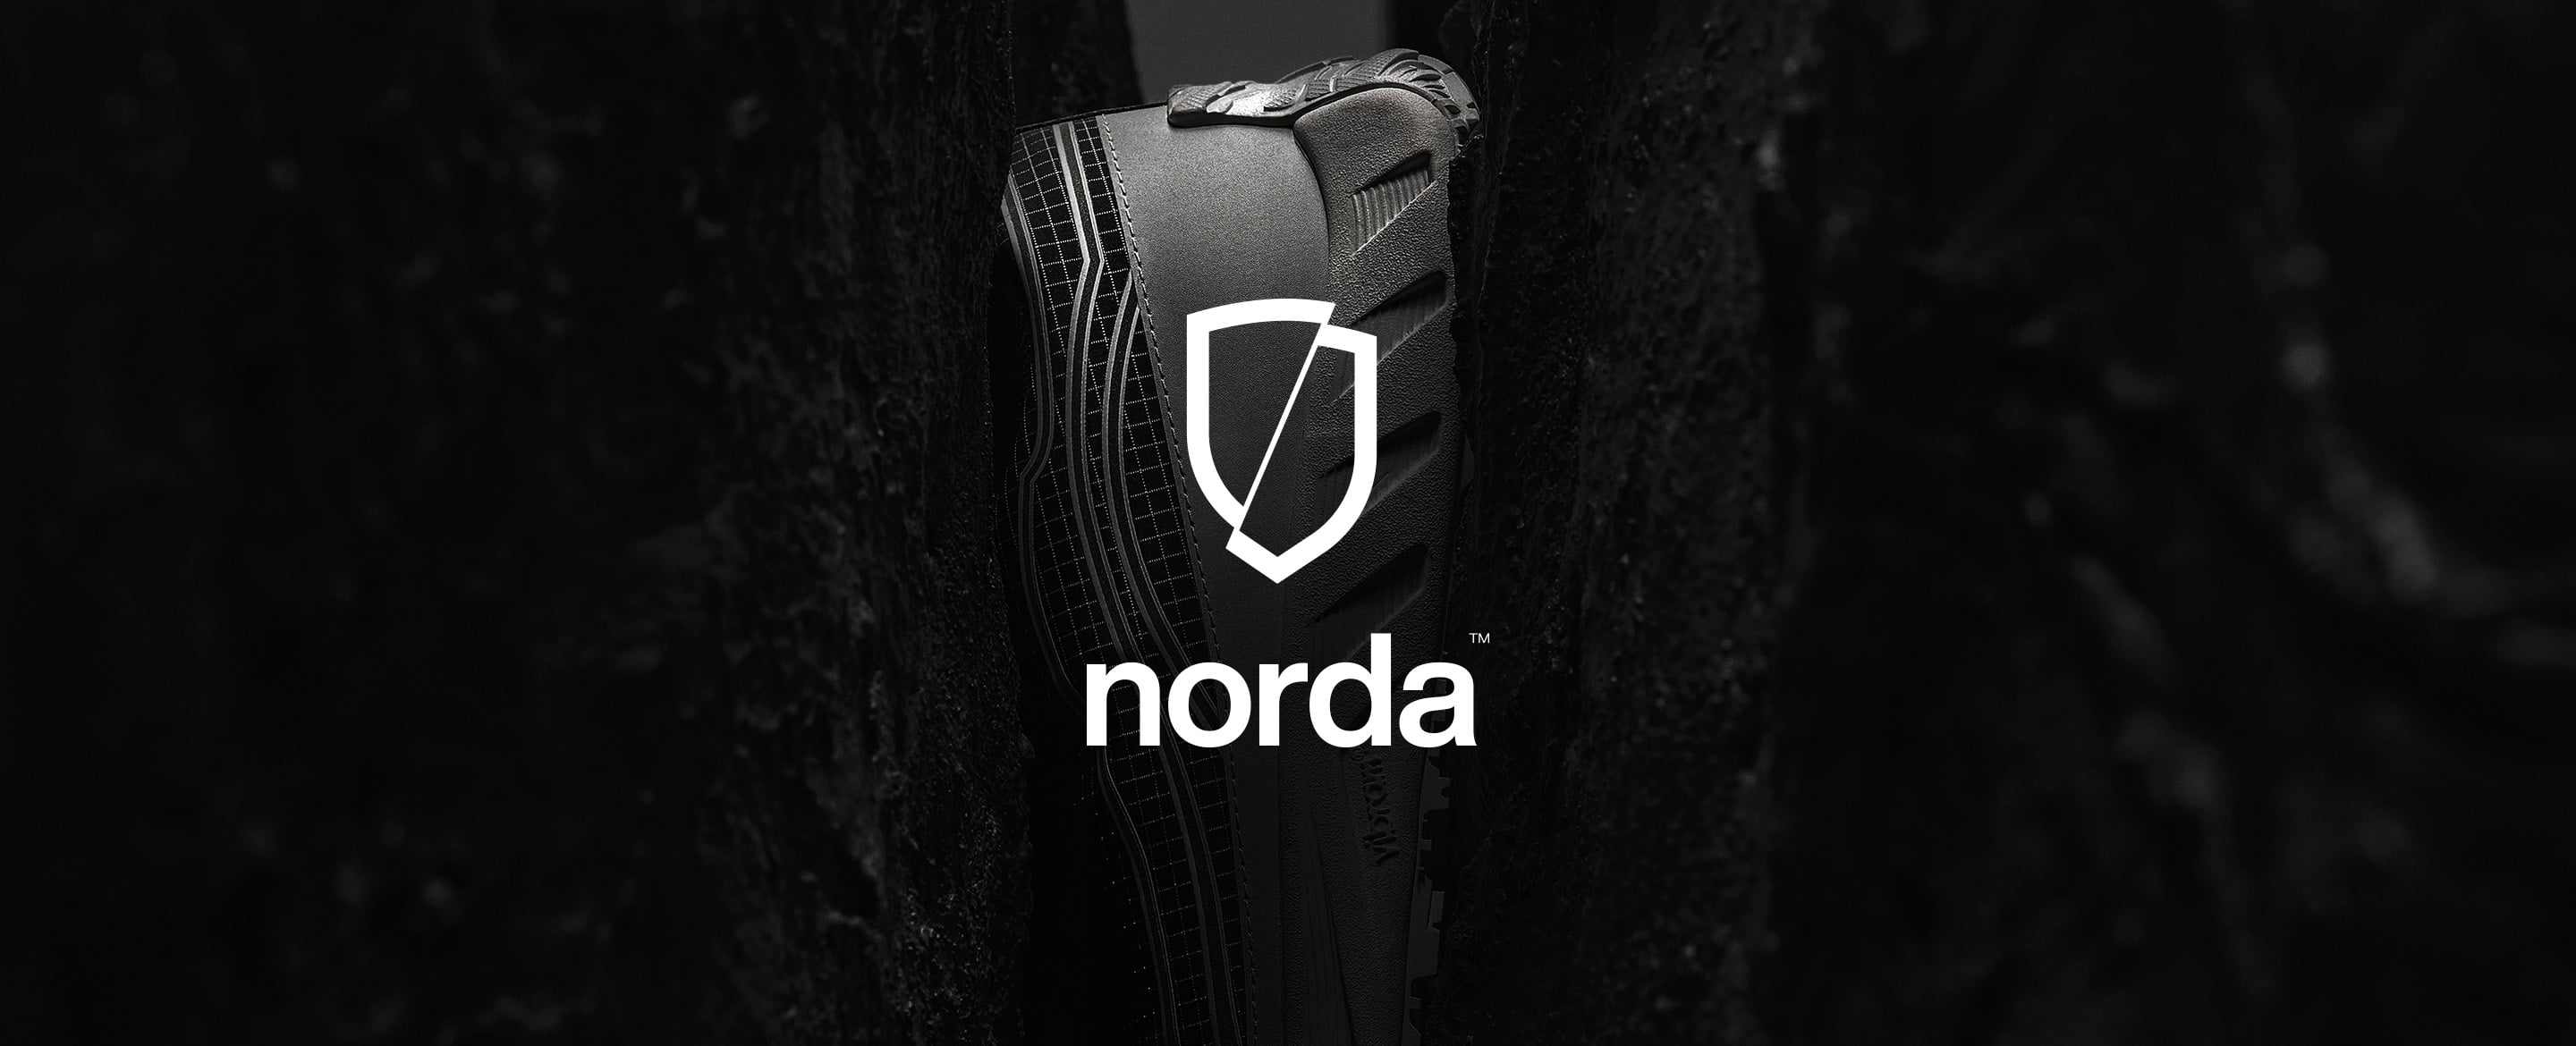 "norda New Arrivals | イノベーションと最先端技術を駆使し地球環境にも配慮したフットウェアブランド〈norda〉の取り扱いがスタート。"